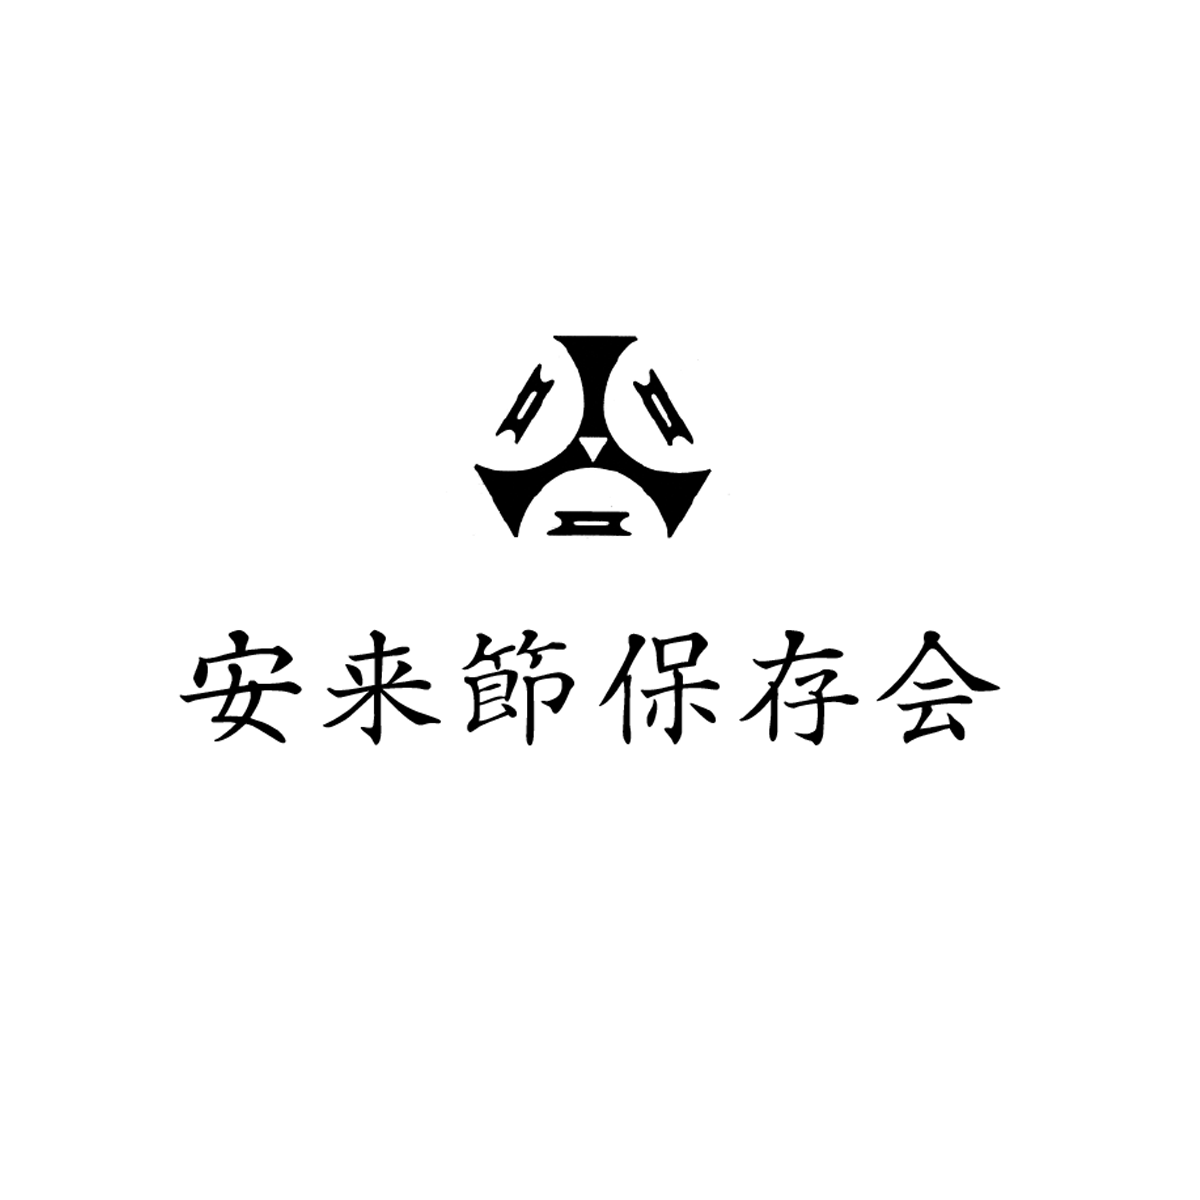 09.男踊り衣装(L)セット(③+⑥+⑦) - 安来節保存会公式ホームページ